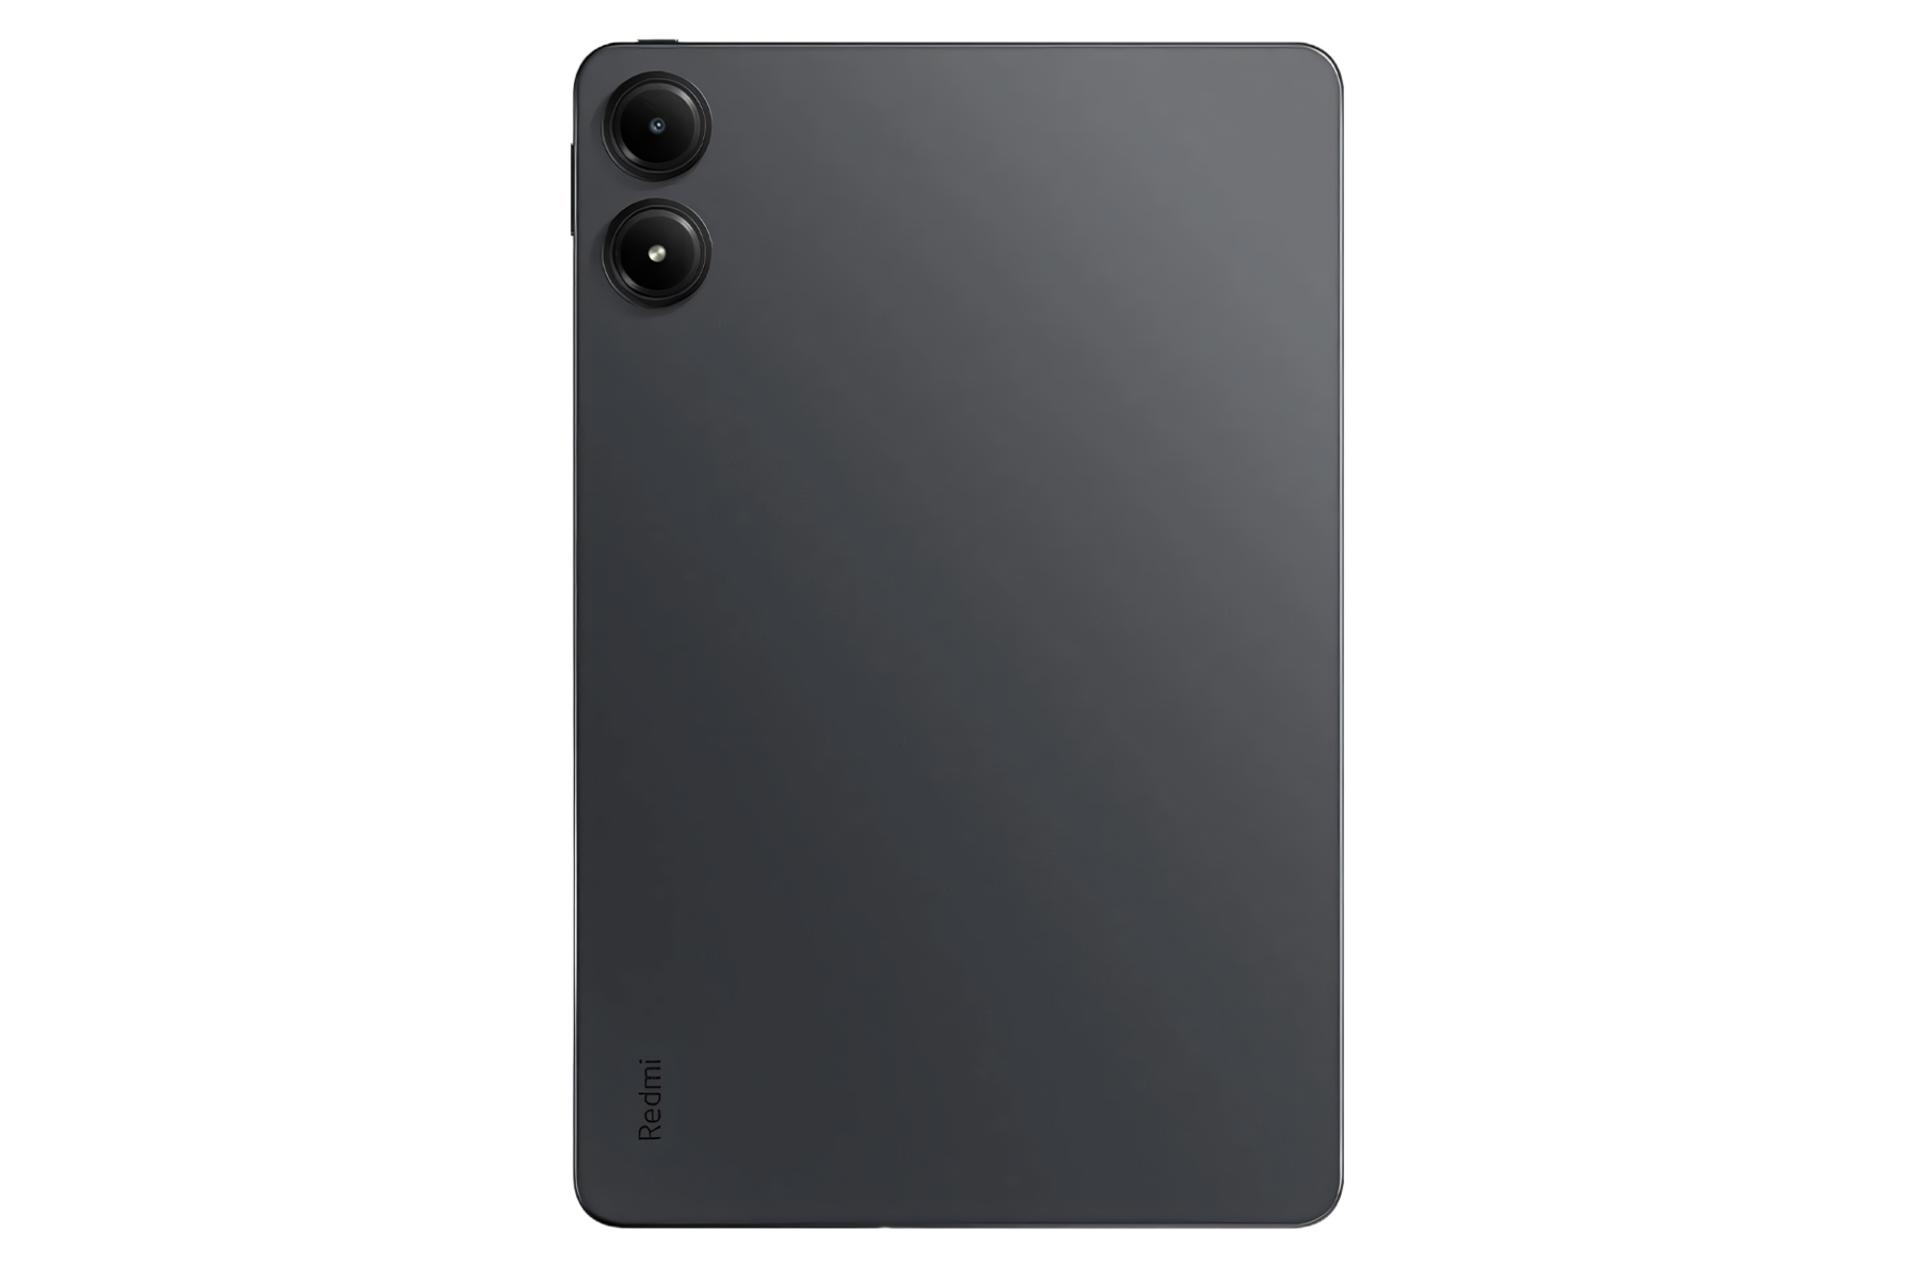 نمای پنل پشت تبلت ردمی پد پرو شیائومی / Xiaomi Redmi Pad Pro با نمایش لوگو و دوربین پنل پشت رنگ خاکستری تیره